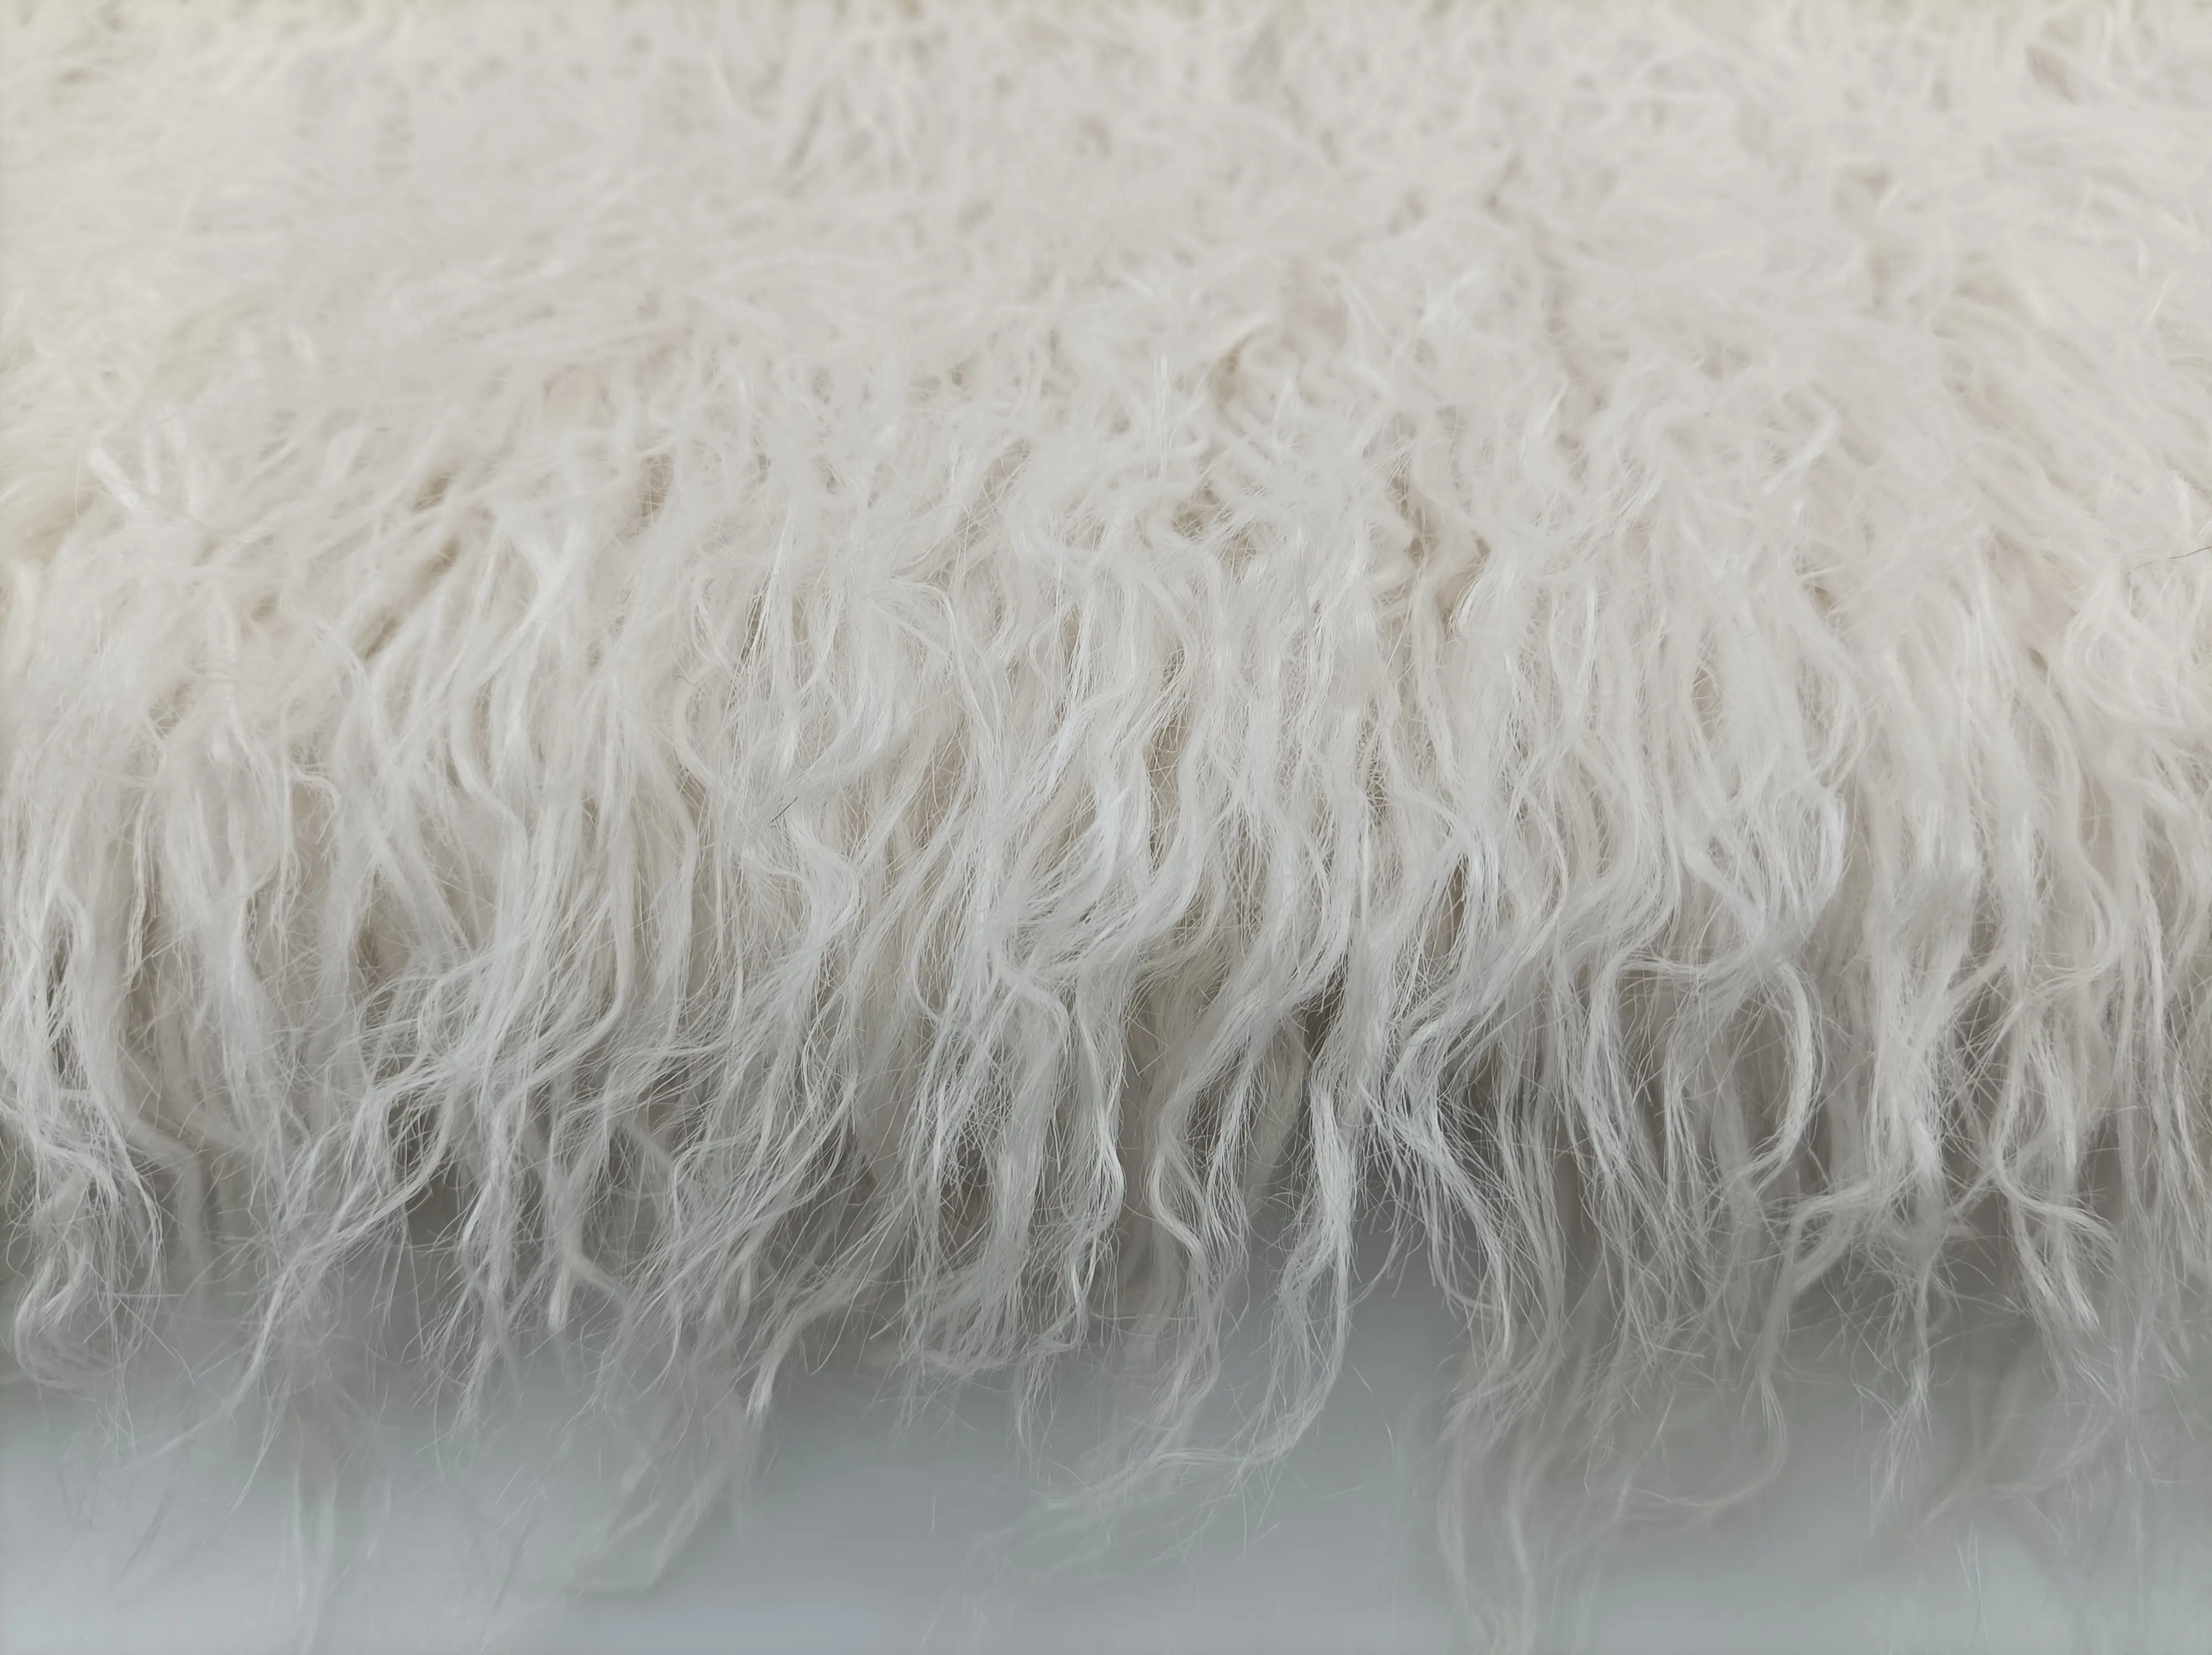 Chất lượng cao đống dài mông cổ cừu cao đống Faux lông vải cho hàng may mặc/hometextile/Đồ chơi